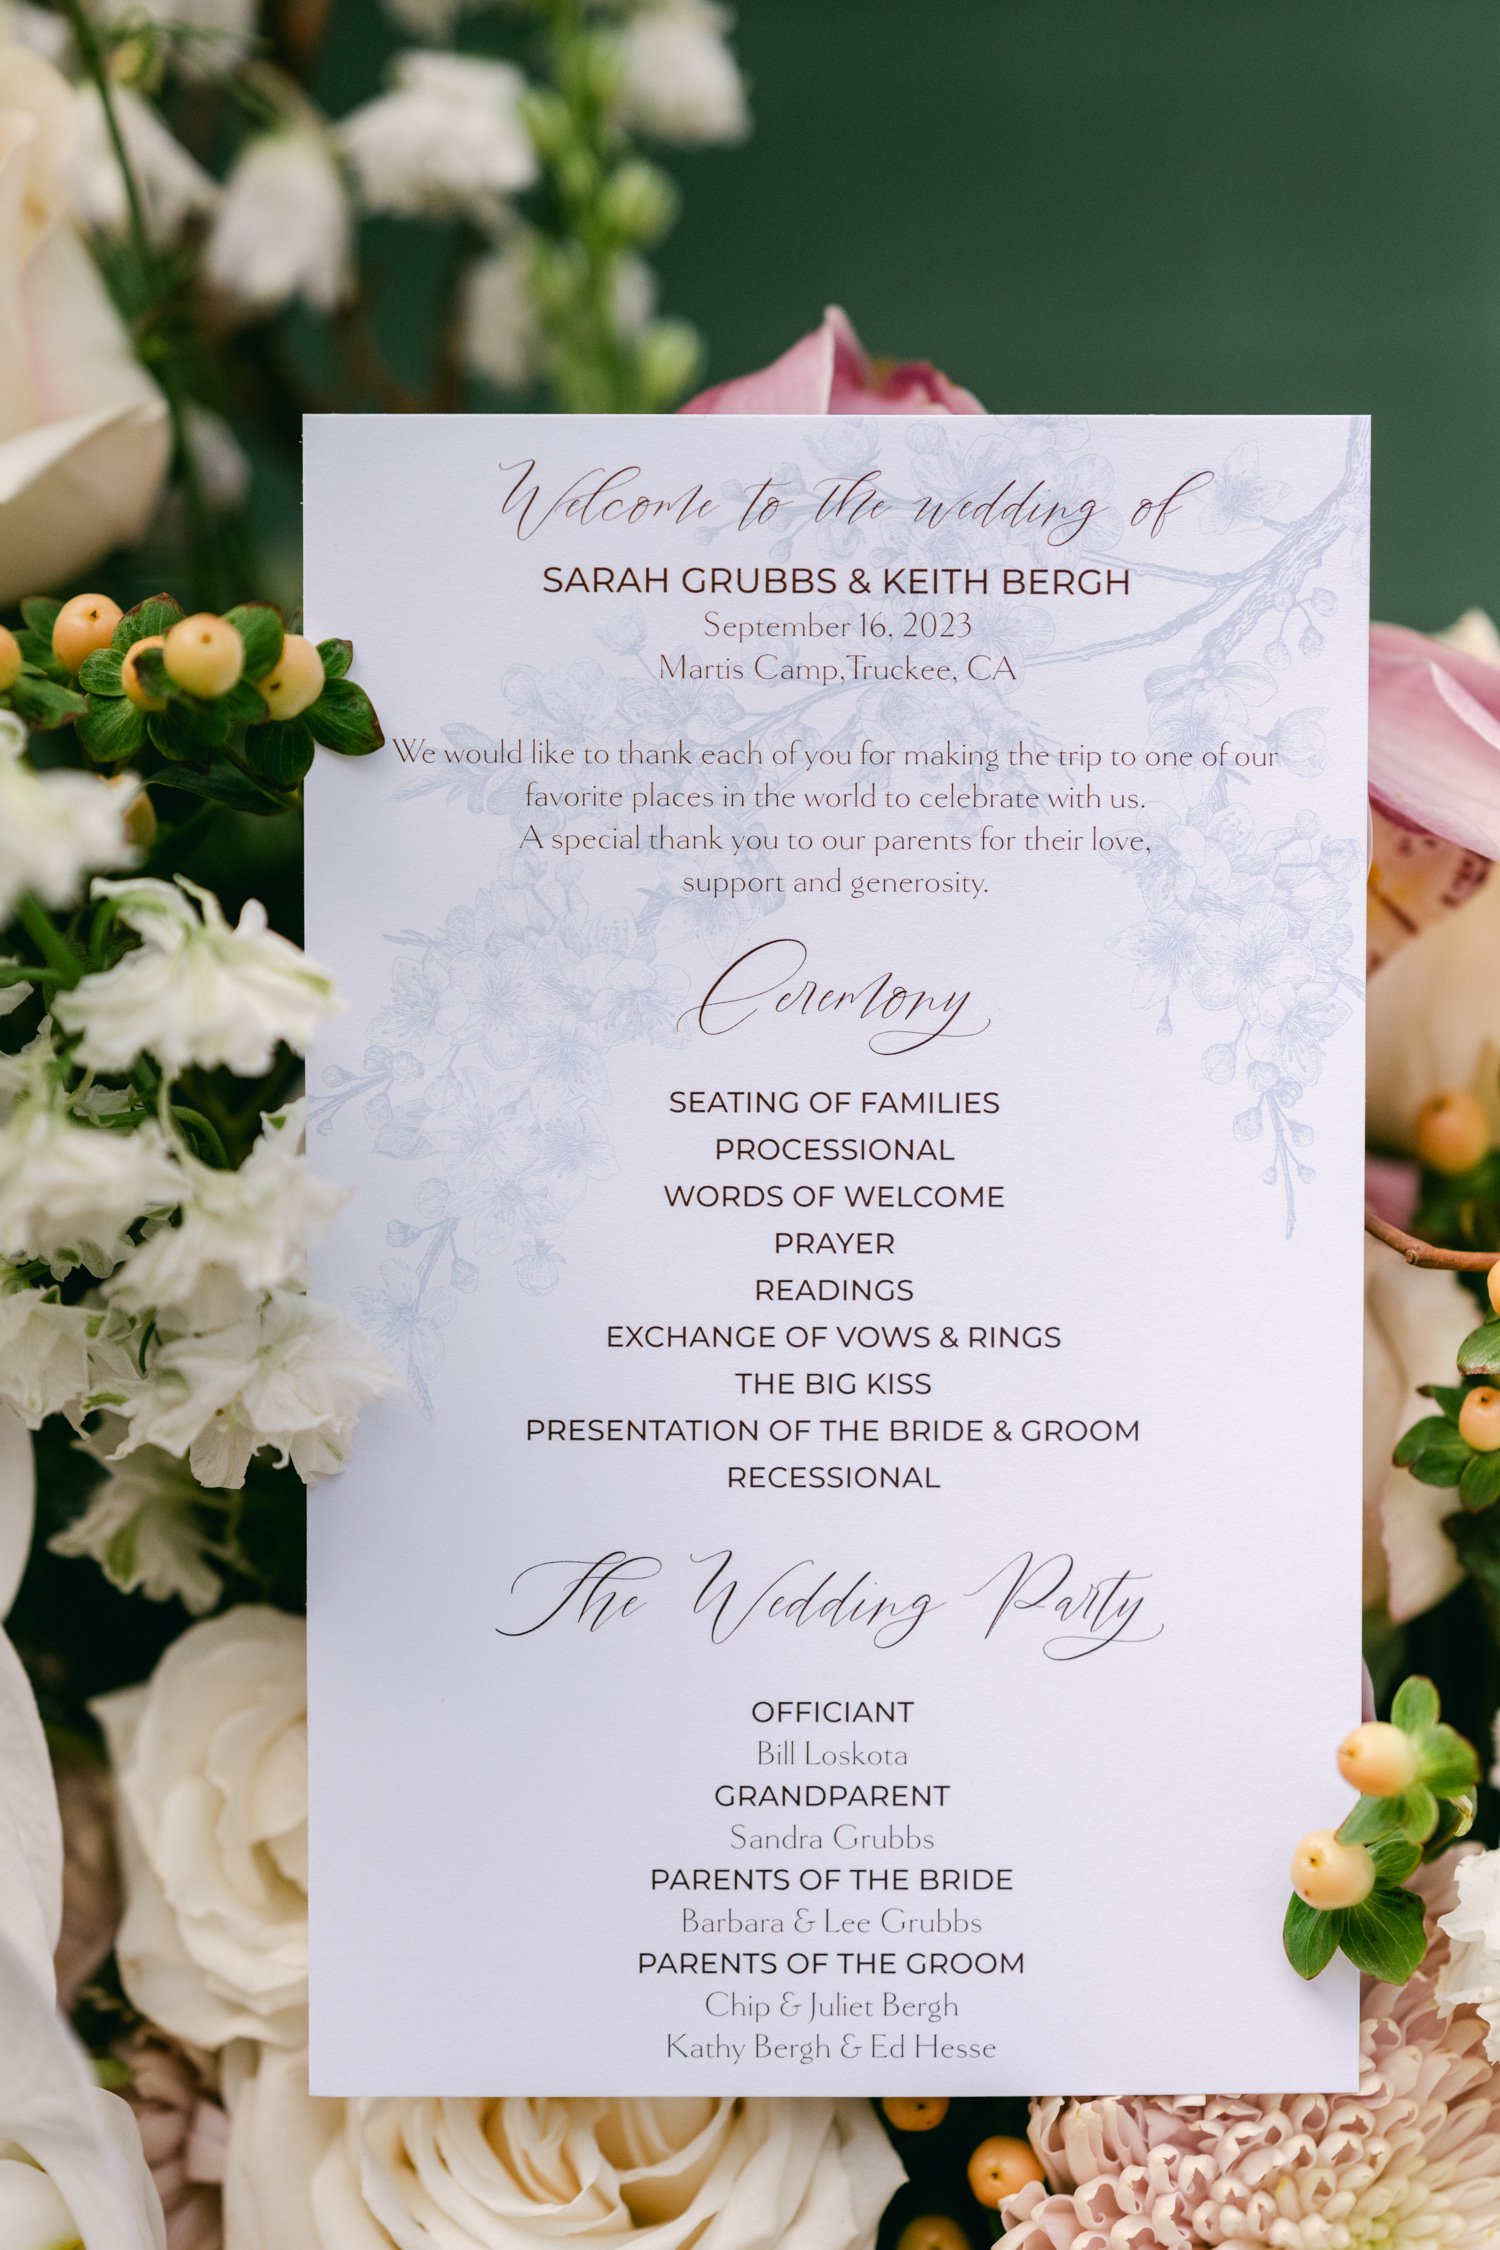 Martis Camp Wedding, photo of minimalist wedding signage with flower background